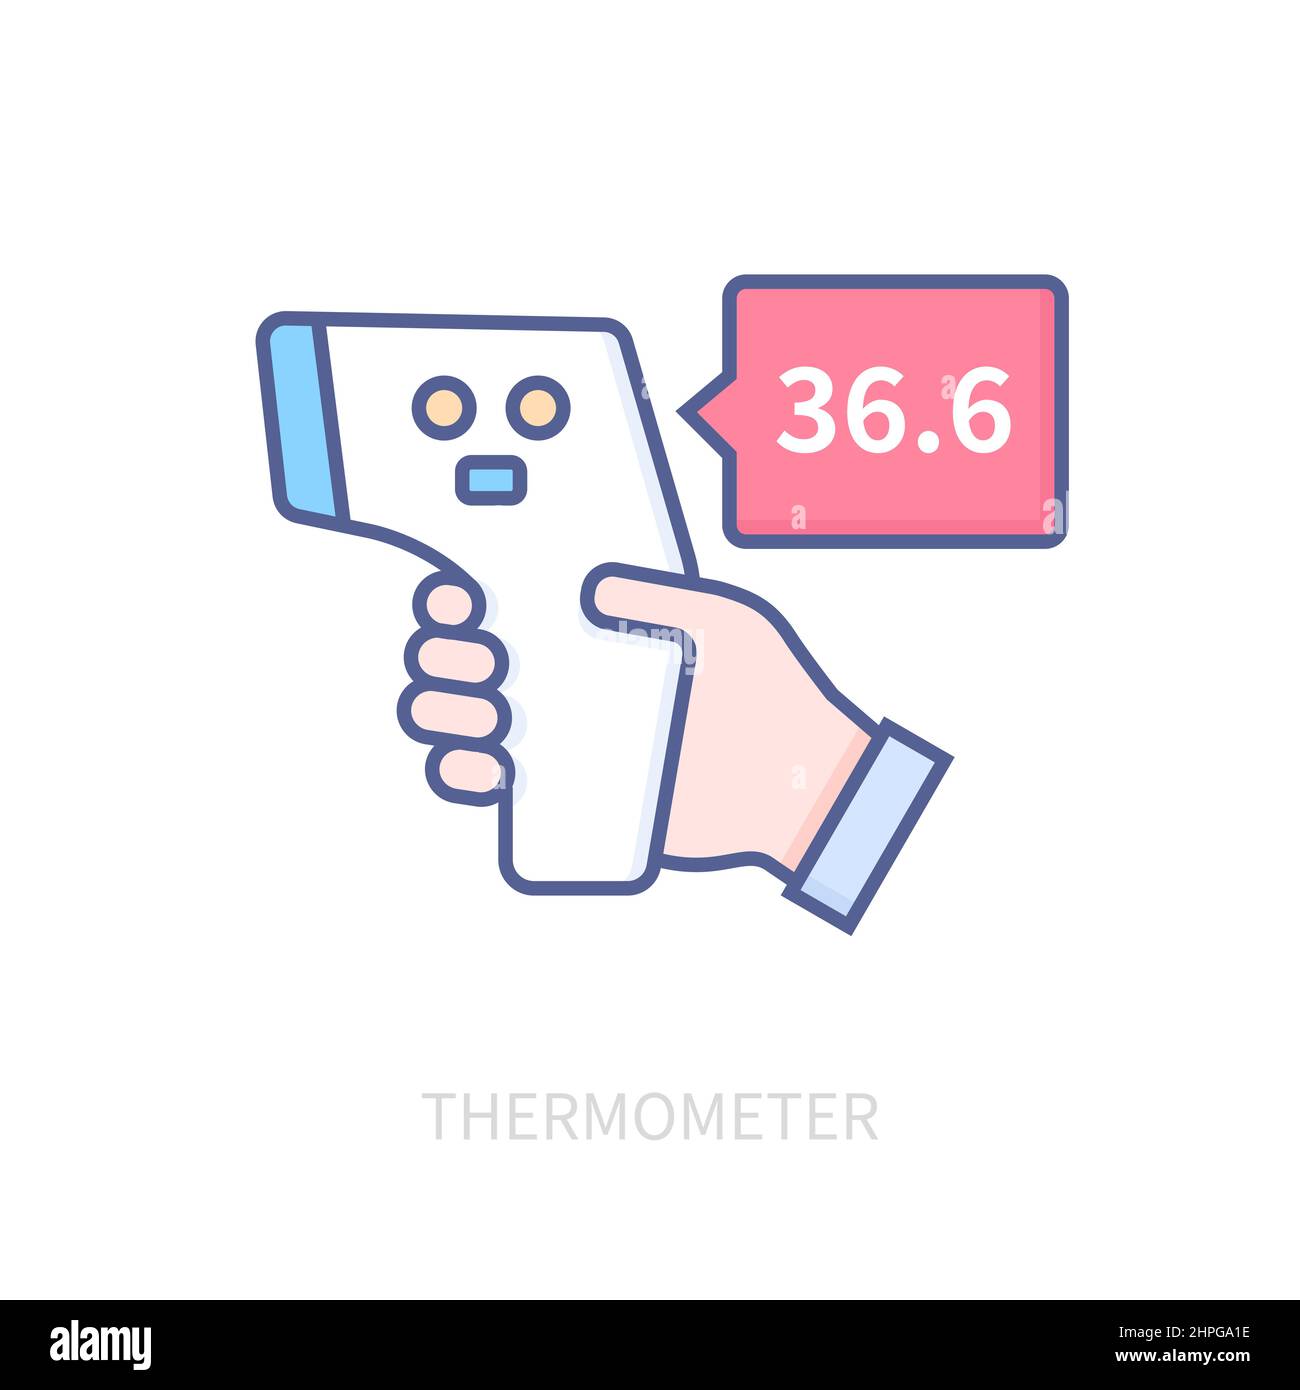 Thermometer - modernes farblich gestricheltes Symbol auf weißem Hintergrund. Detailgetreues Bild des elektronischen Temperatursensorgeräts. H Stock Vektor